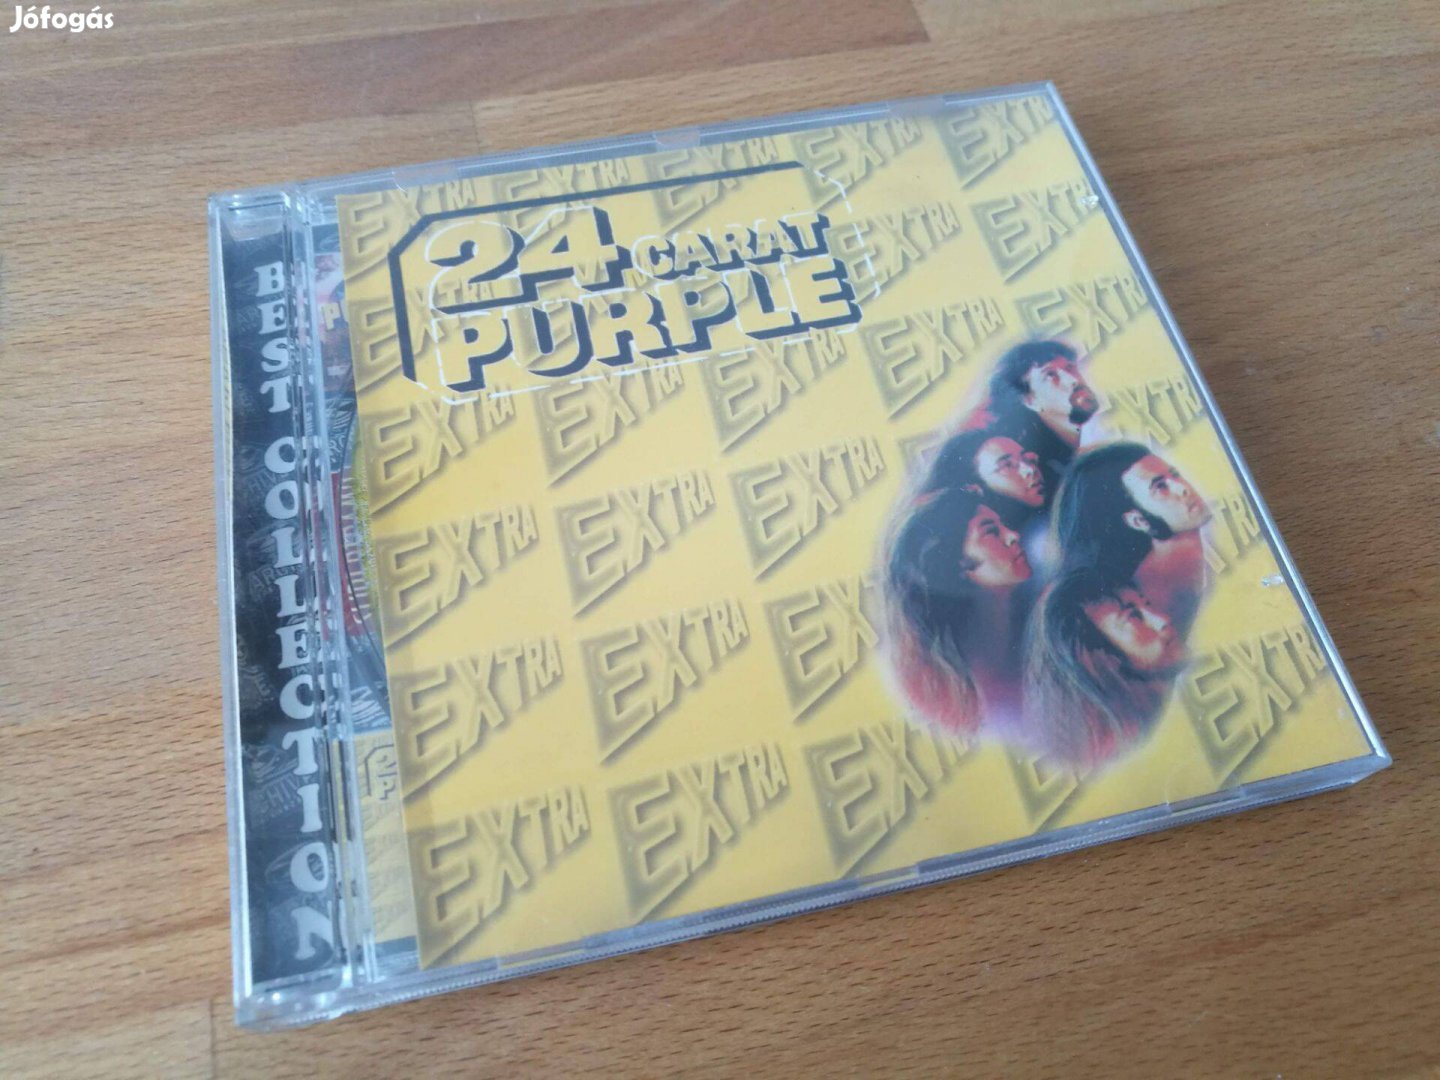 Deep Purple - 24 Carat Purple (Archive Records, HU, CD)